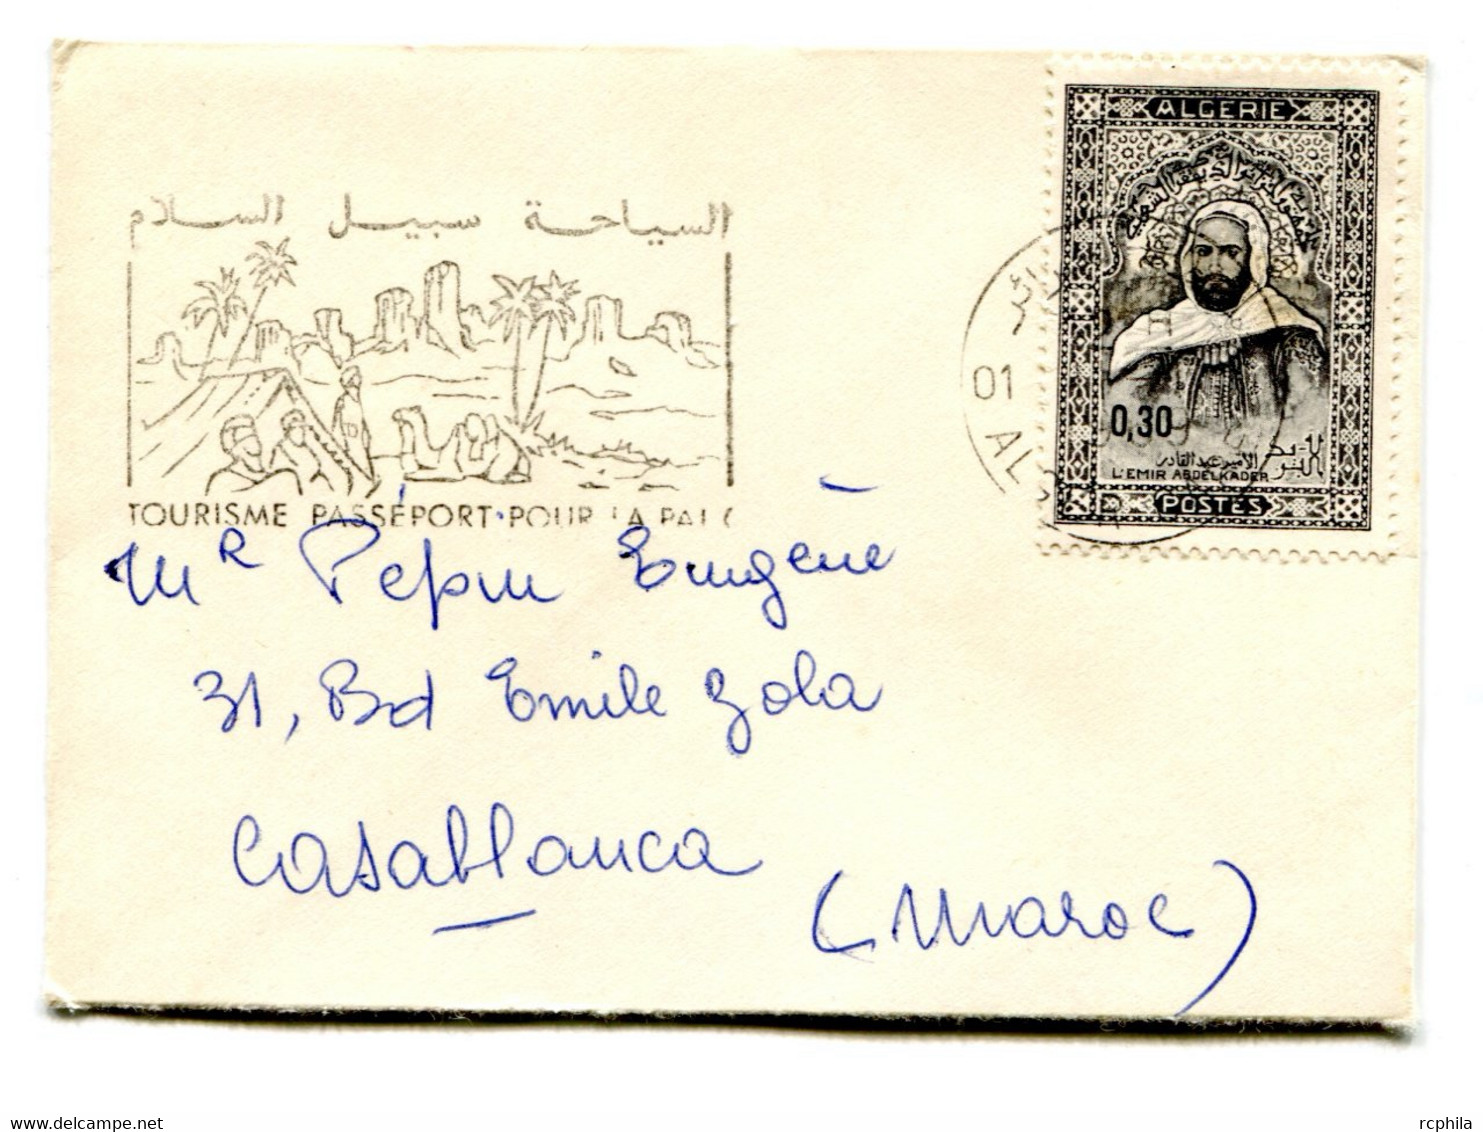 RC 23508 ALGERIE 1969 MIGNONETTE CARTE DE VISITE POUR CASABLANCA MAROC - Argelia (1962-...)